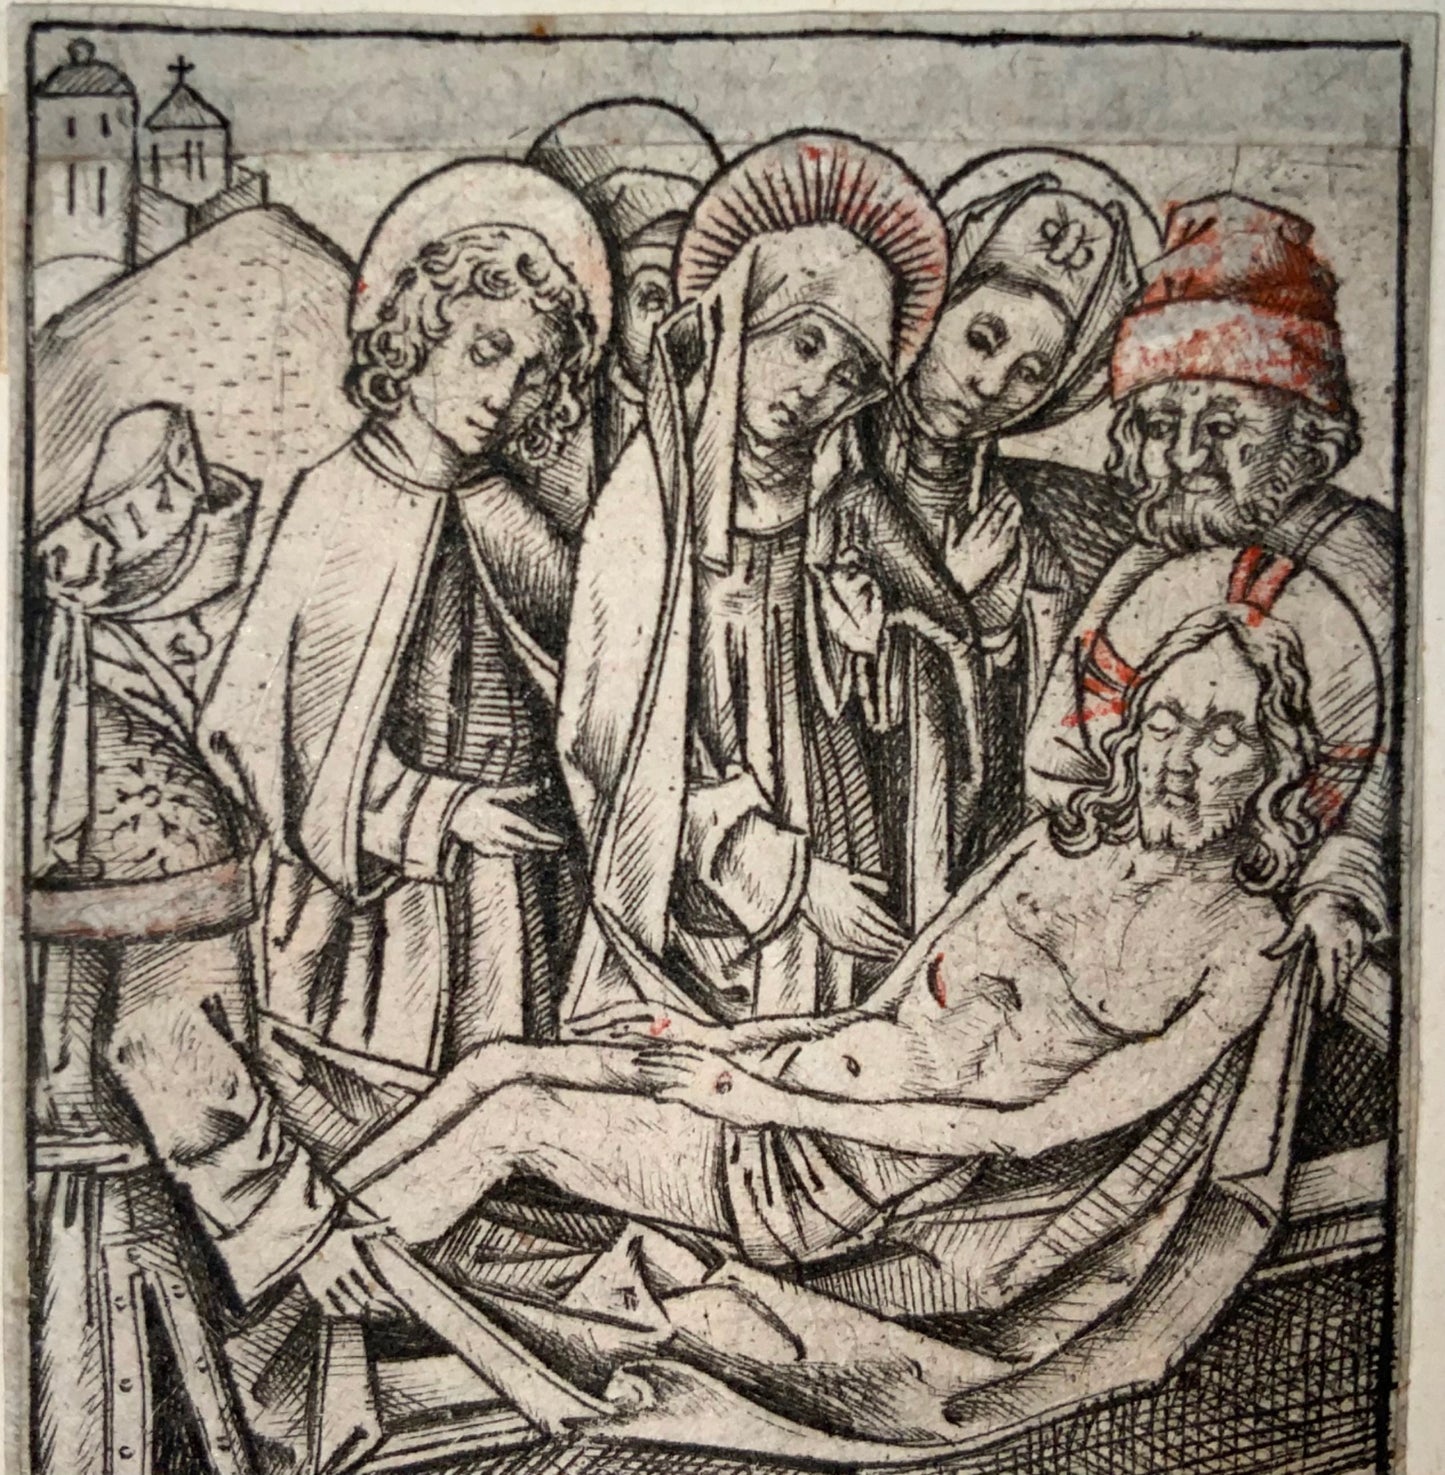 1460 c Israel van Meckenem, Enterrement du Christ, gravure sur métal, milieu du XVe siècle, art religieux